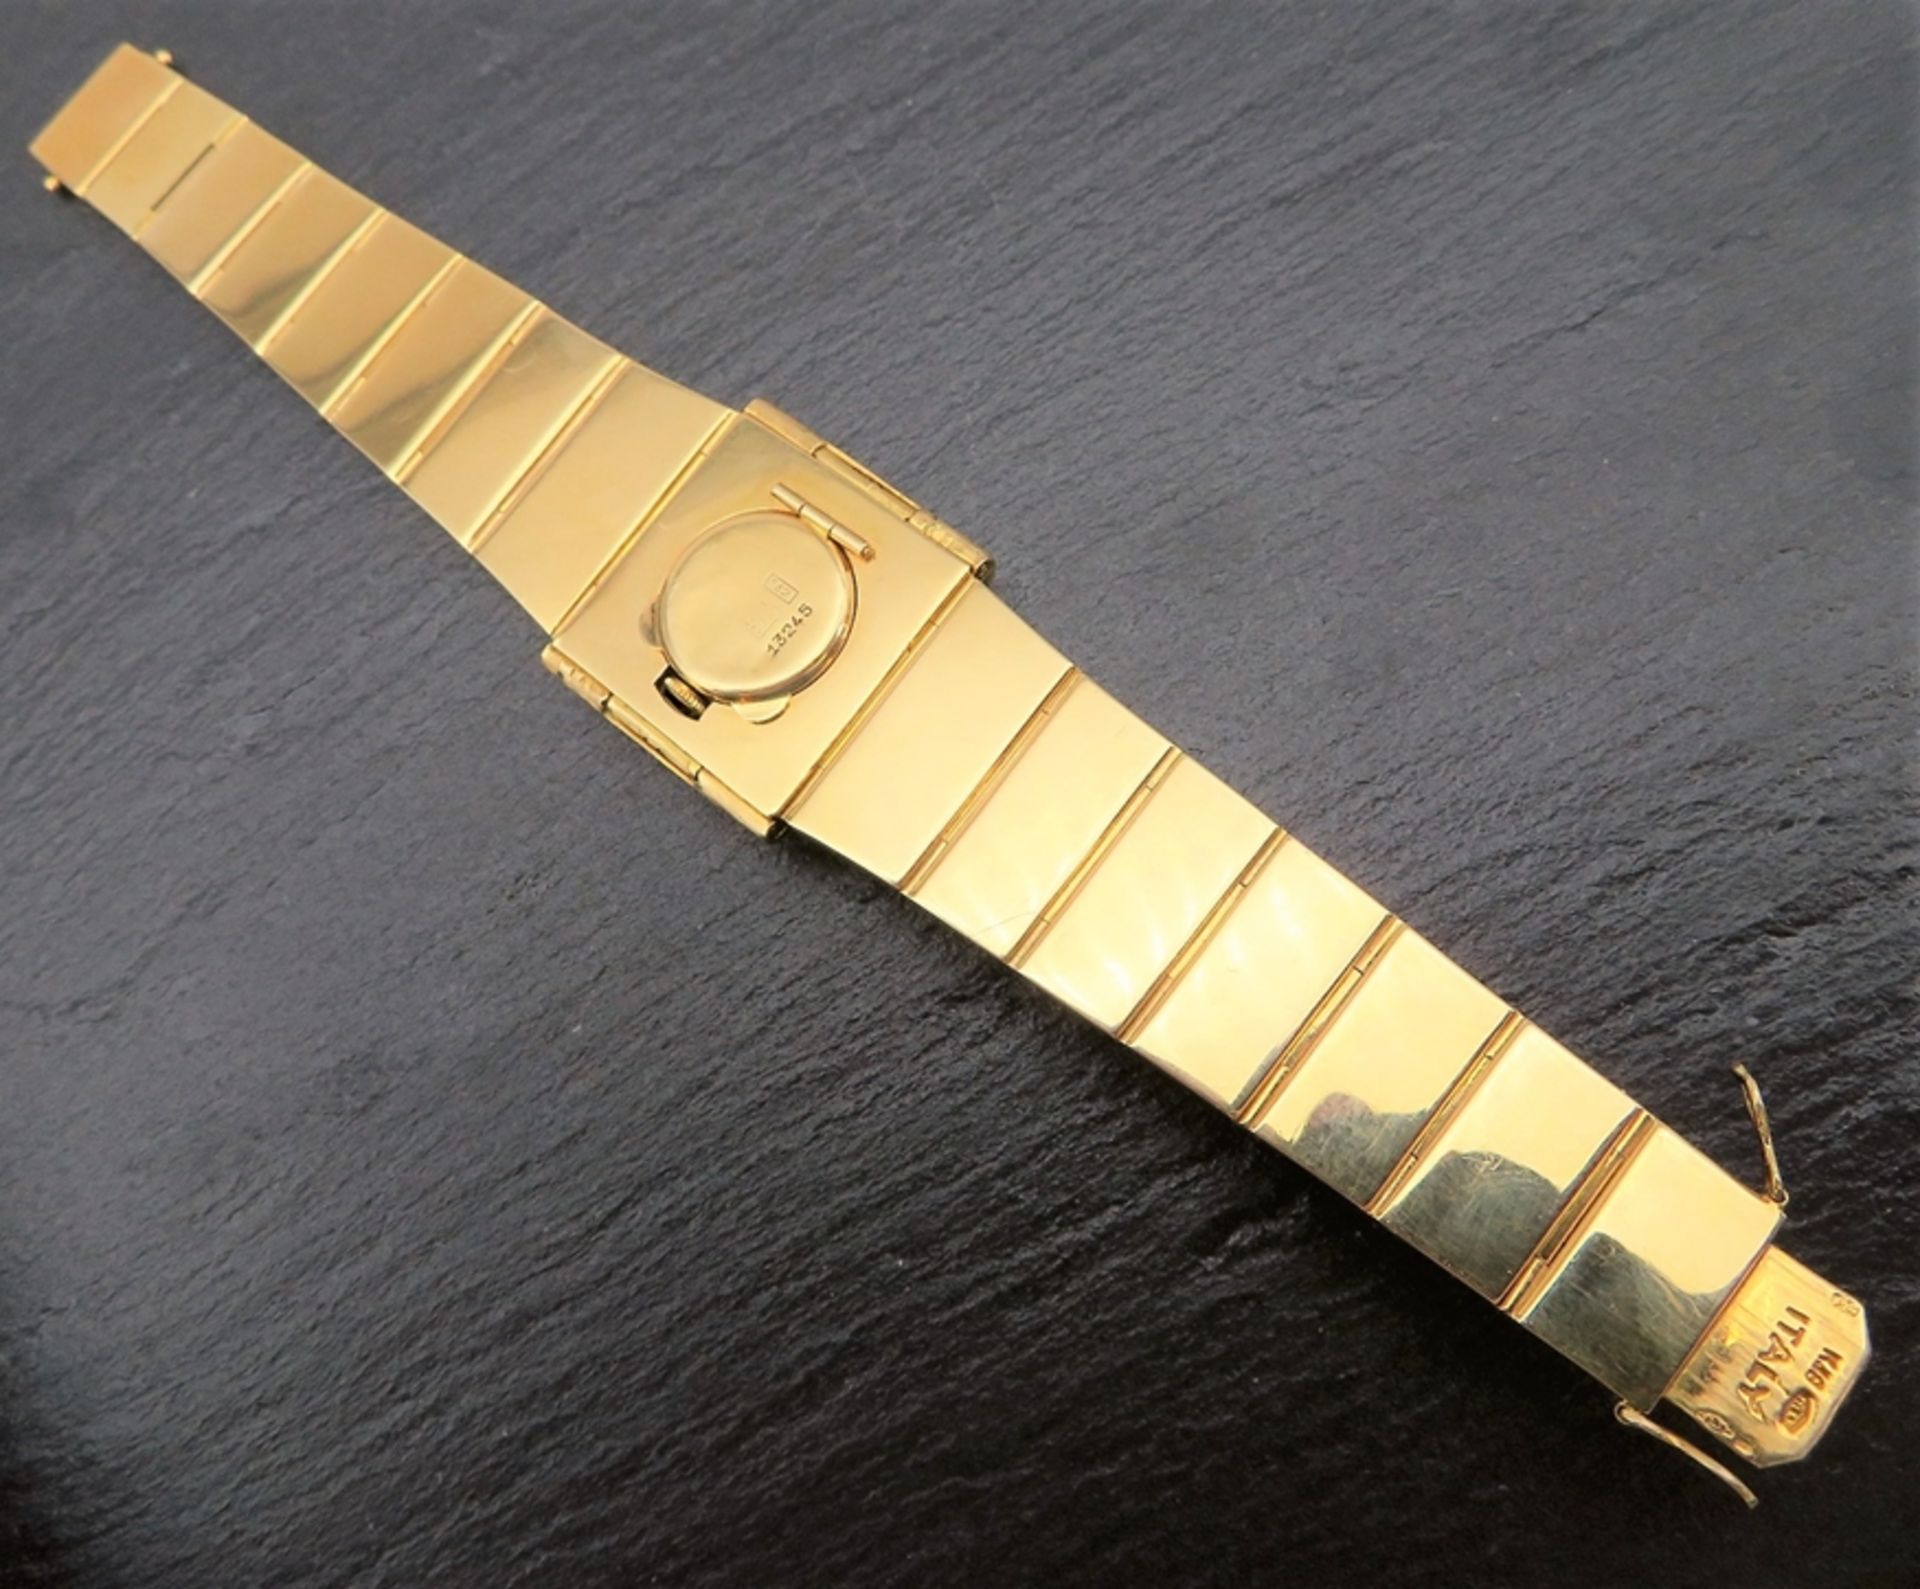 Designer Armbanduhr, Schweiz, Colin, 1960/70er Jahre, als Armband tragbar, verdecktes Zifferblatt b - Bild 4 aus 4